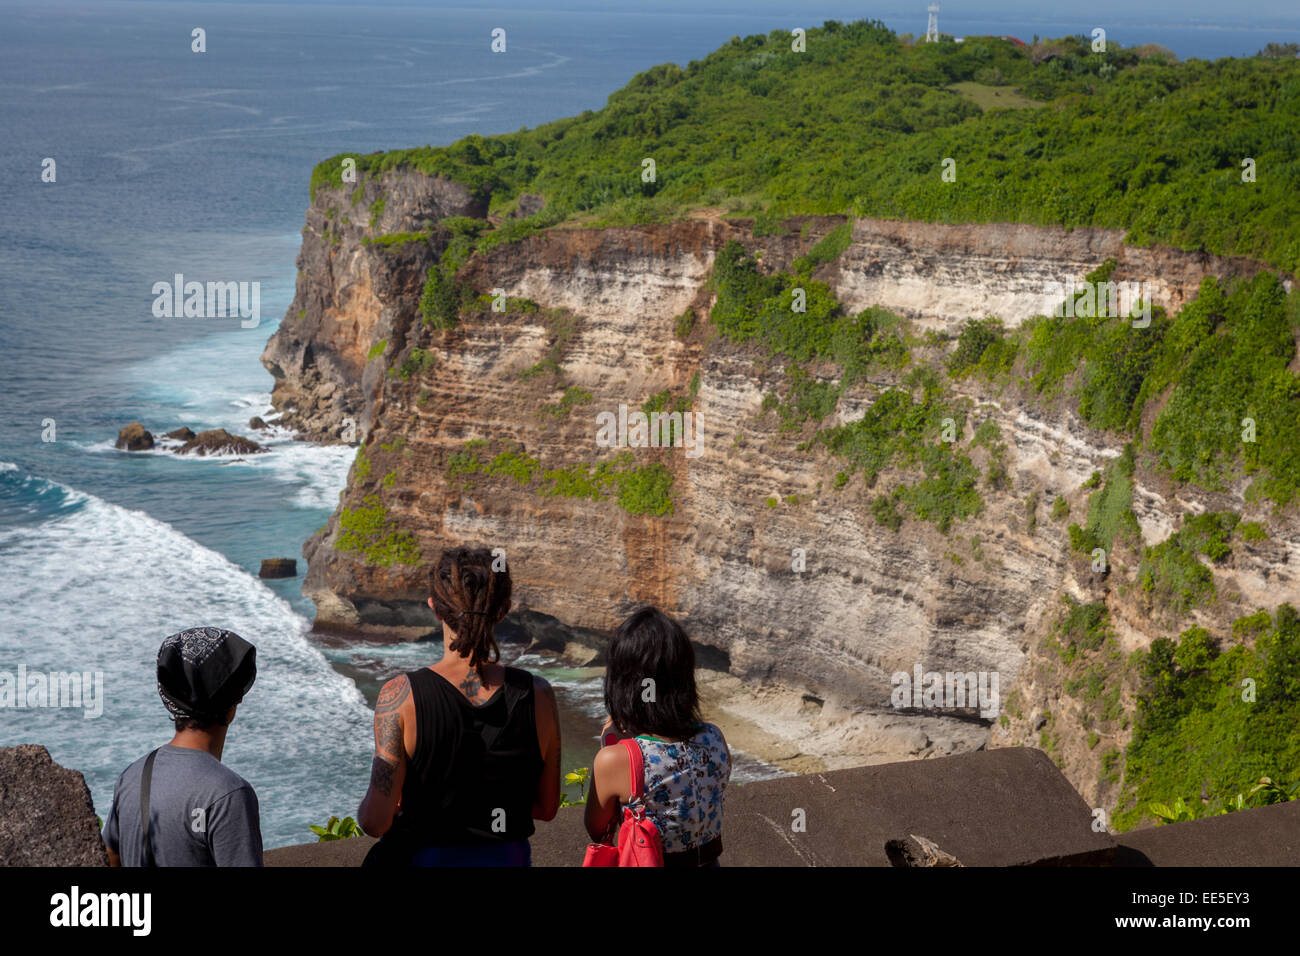 Tourists enjoying panoramic views of Uluwatu, Bali. Stock Photo